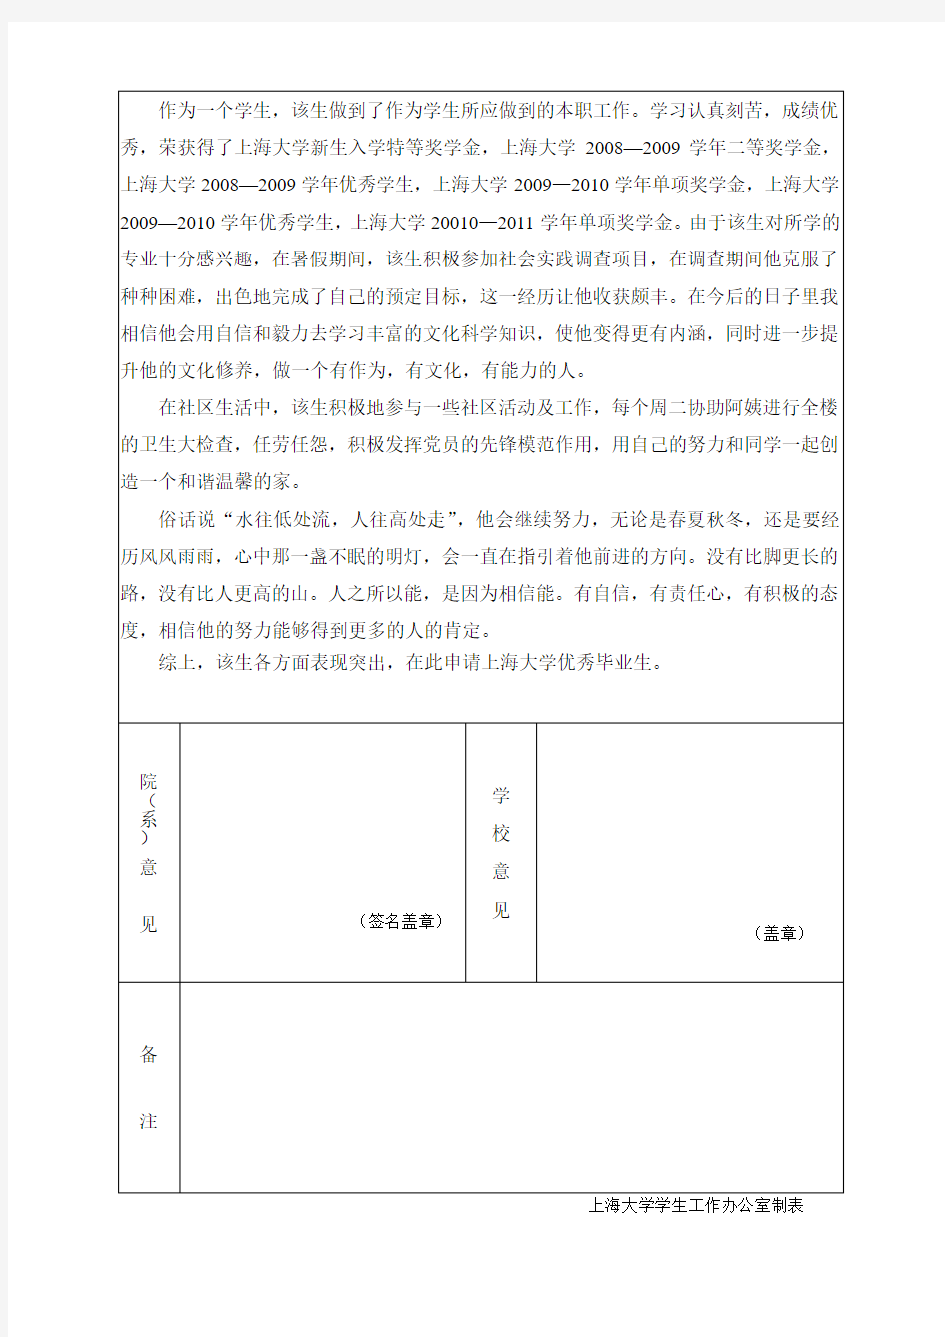 上海大学优秀毕业生登记表